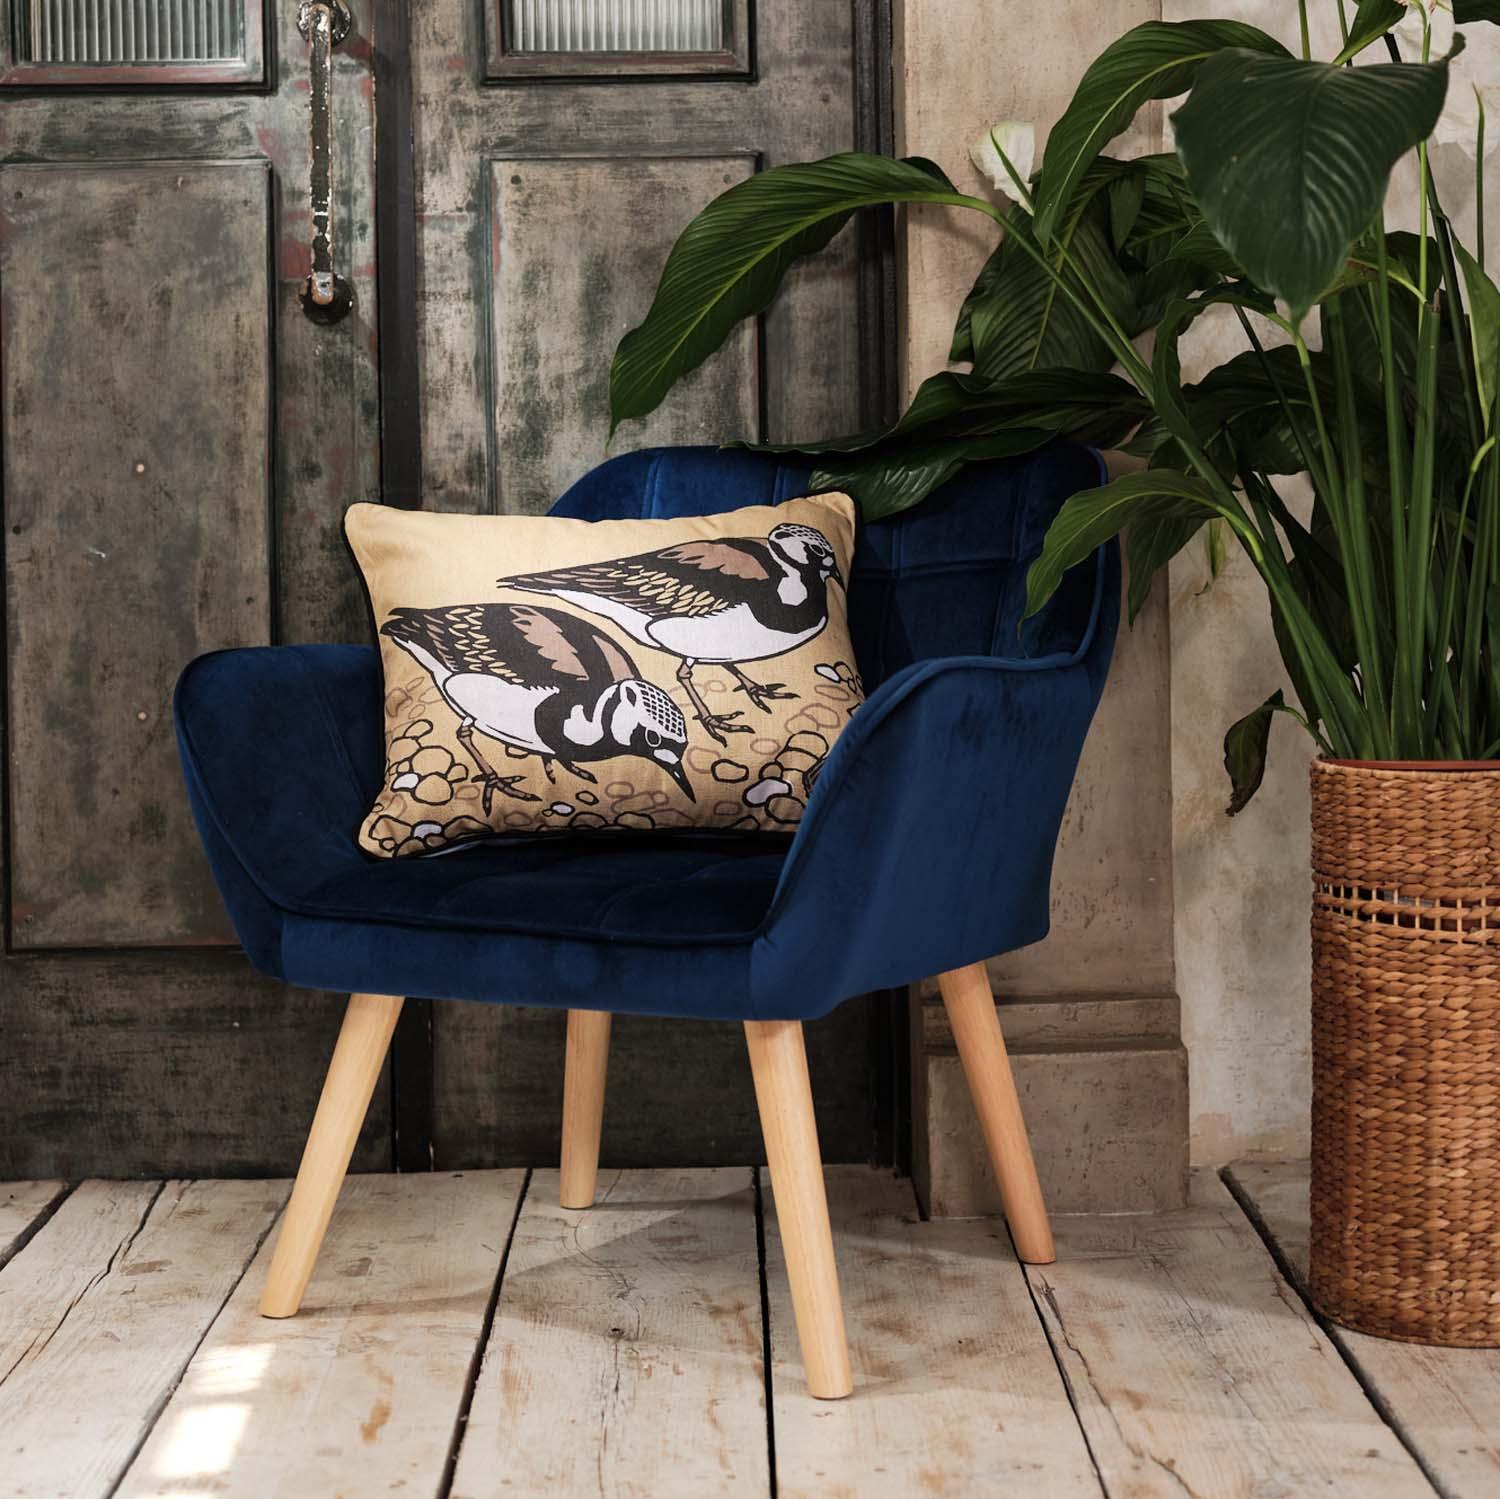 Turnstones - Robert Gillmor Cushion - Handmade Cushions UK - WeLoveCushions